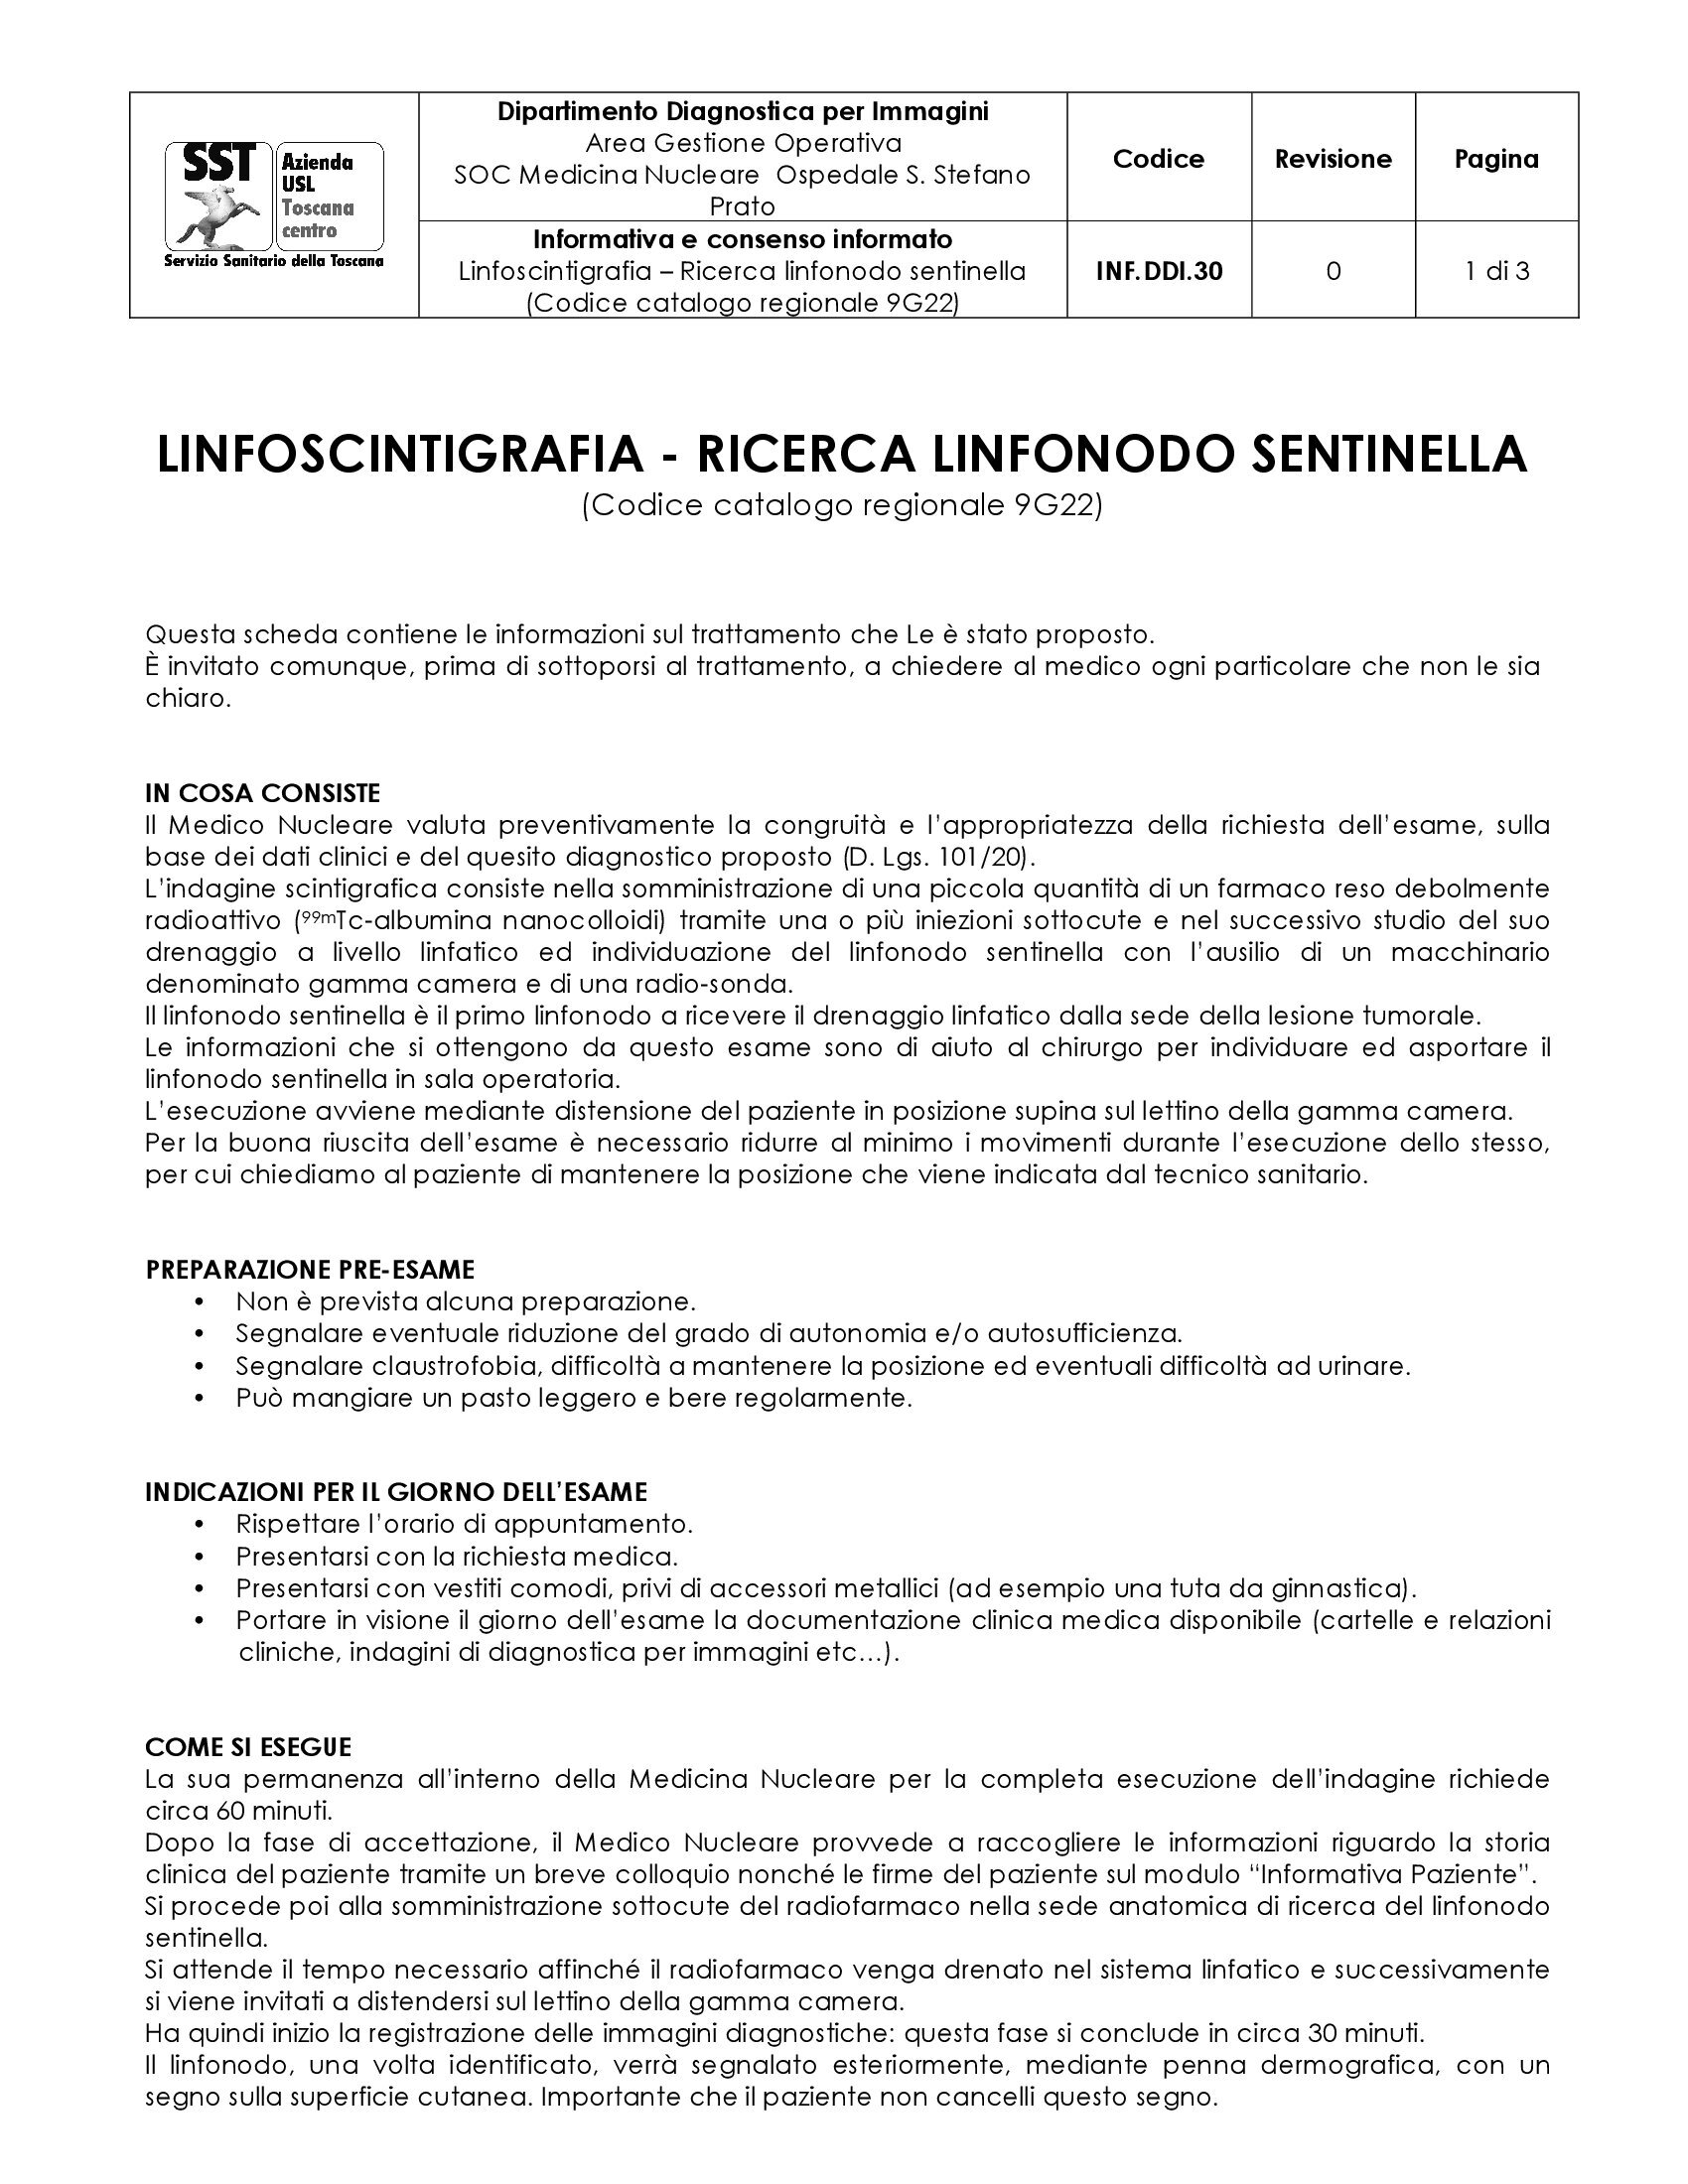 INF.DDI.30 Linfoscintigrafia – Ricerca linfonodo sentinella (Codice catalogo regionale 9G22)